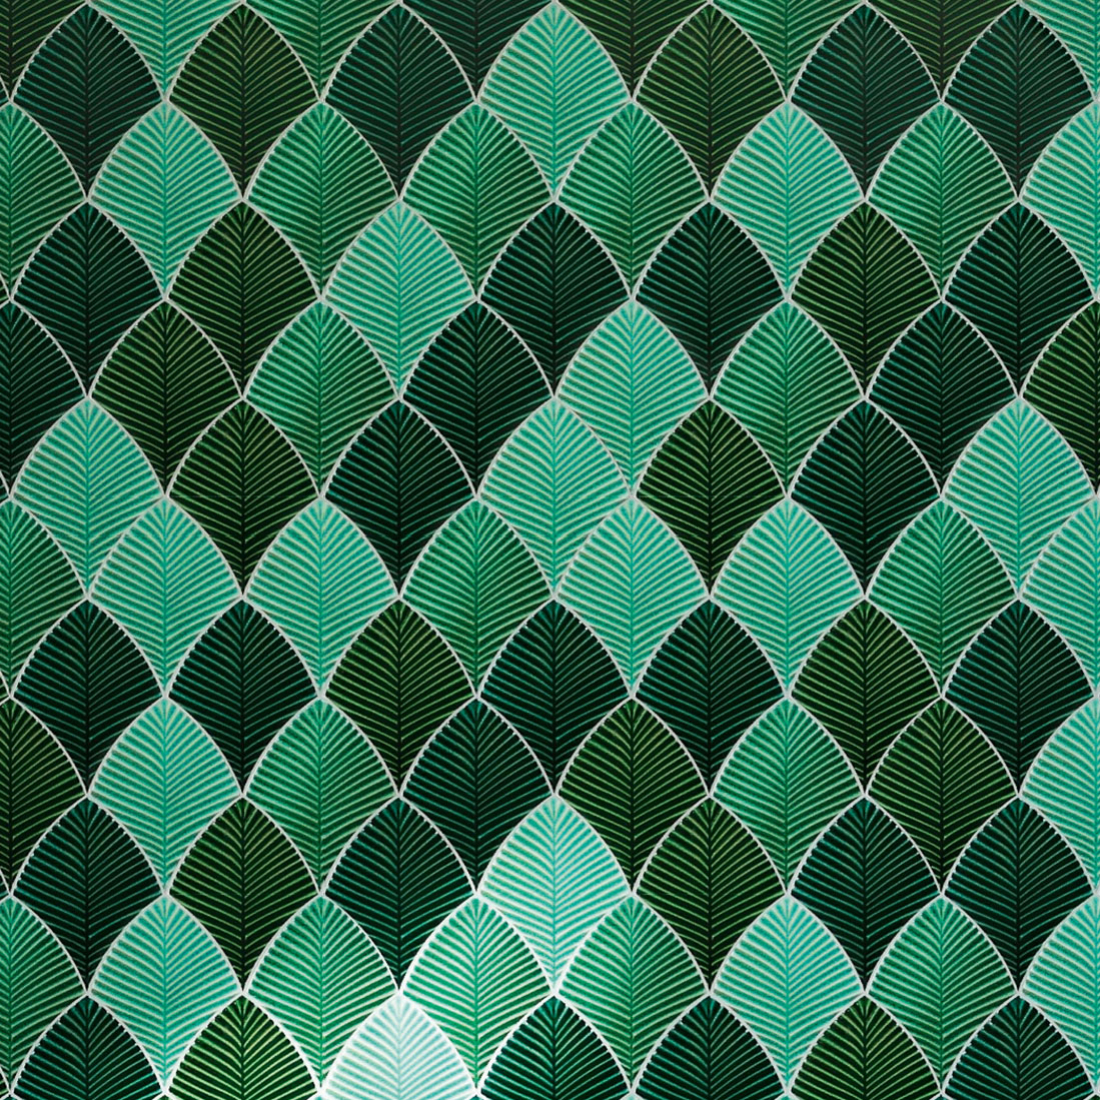  Carrelage feuilles mix vertes de Bati Orient dans différentes teintes de vert et bleu